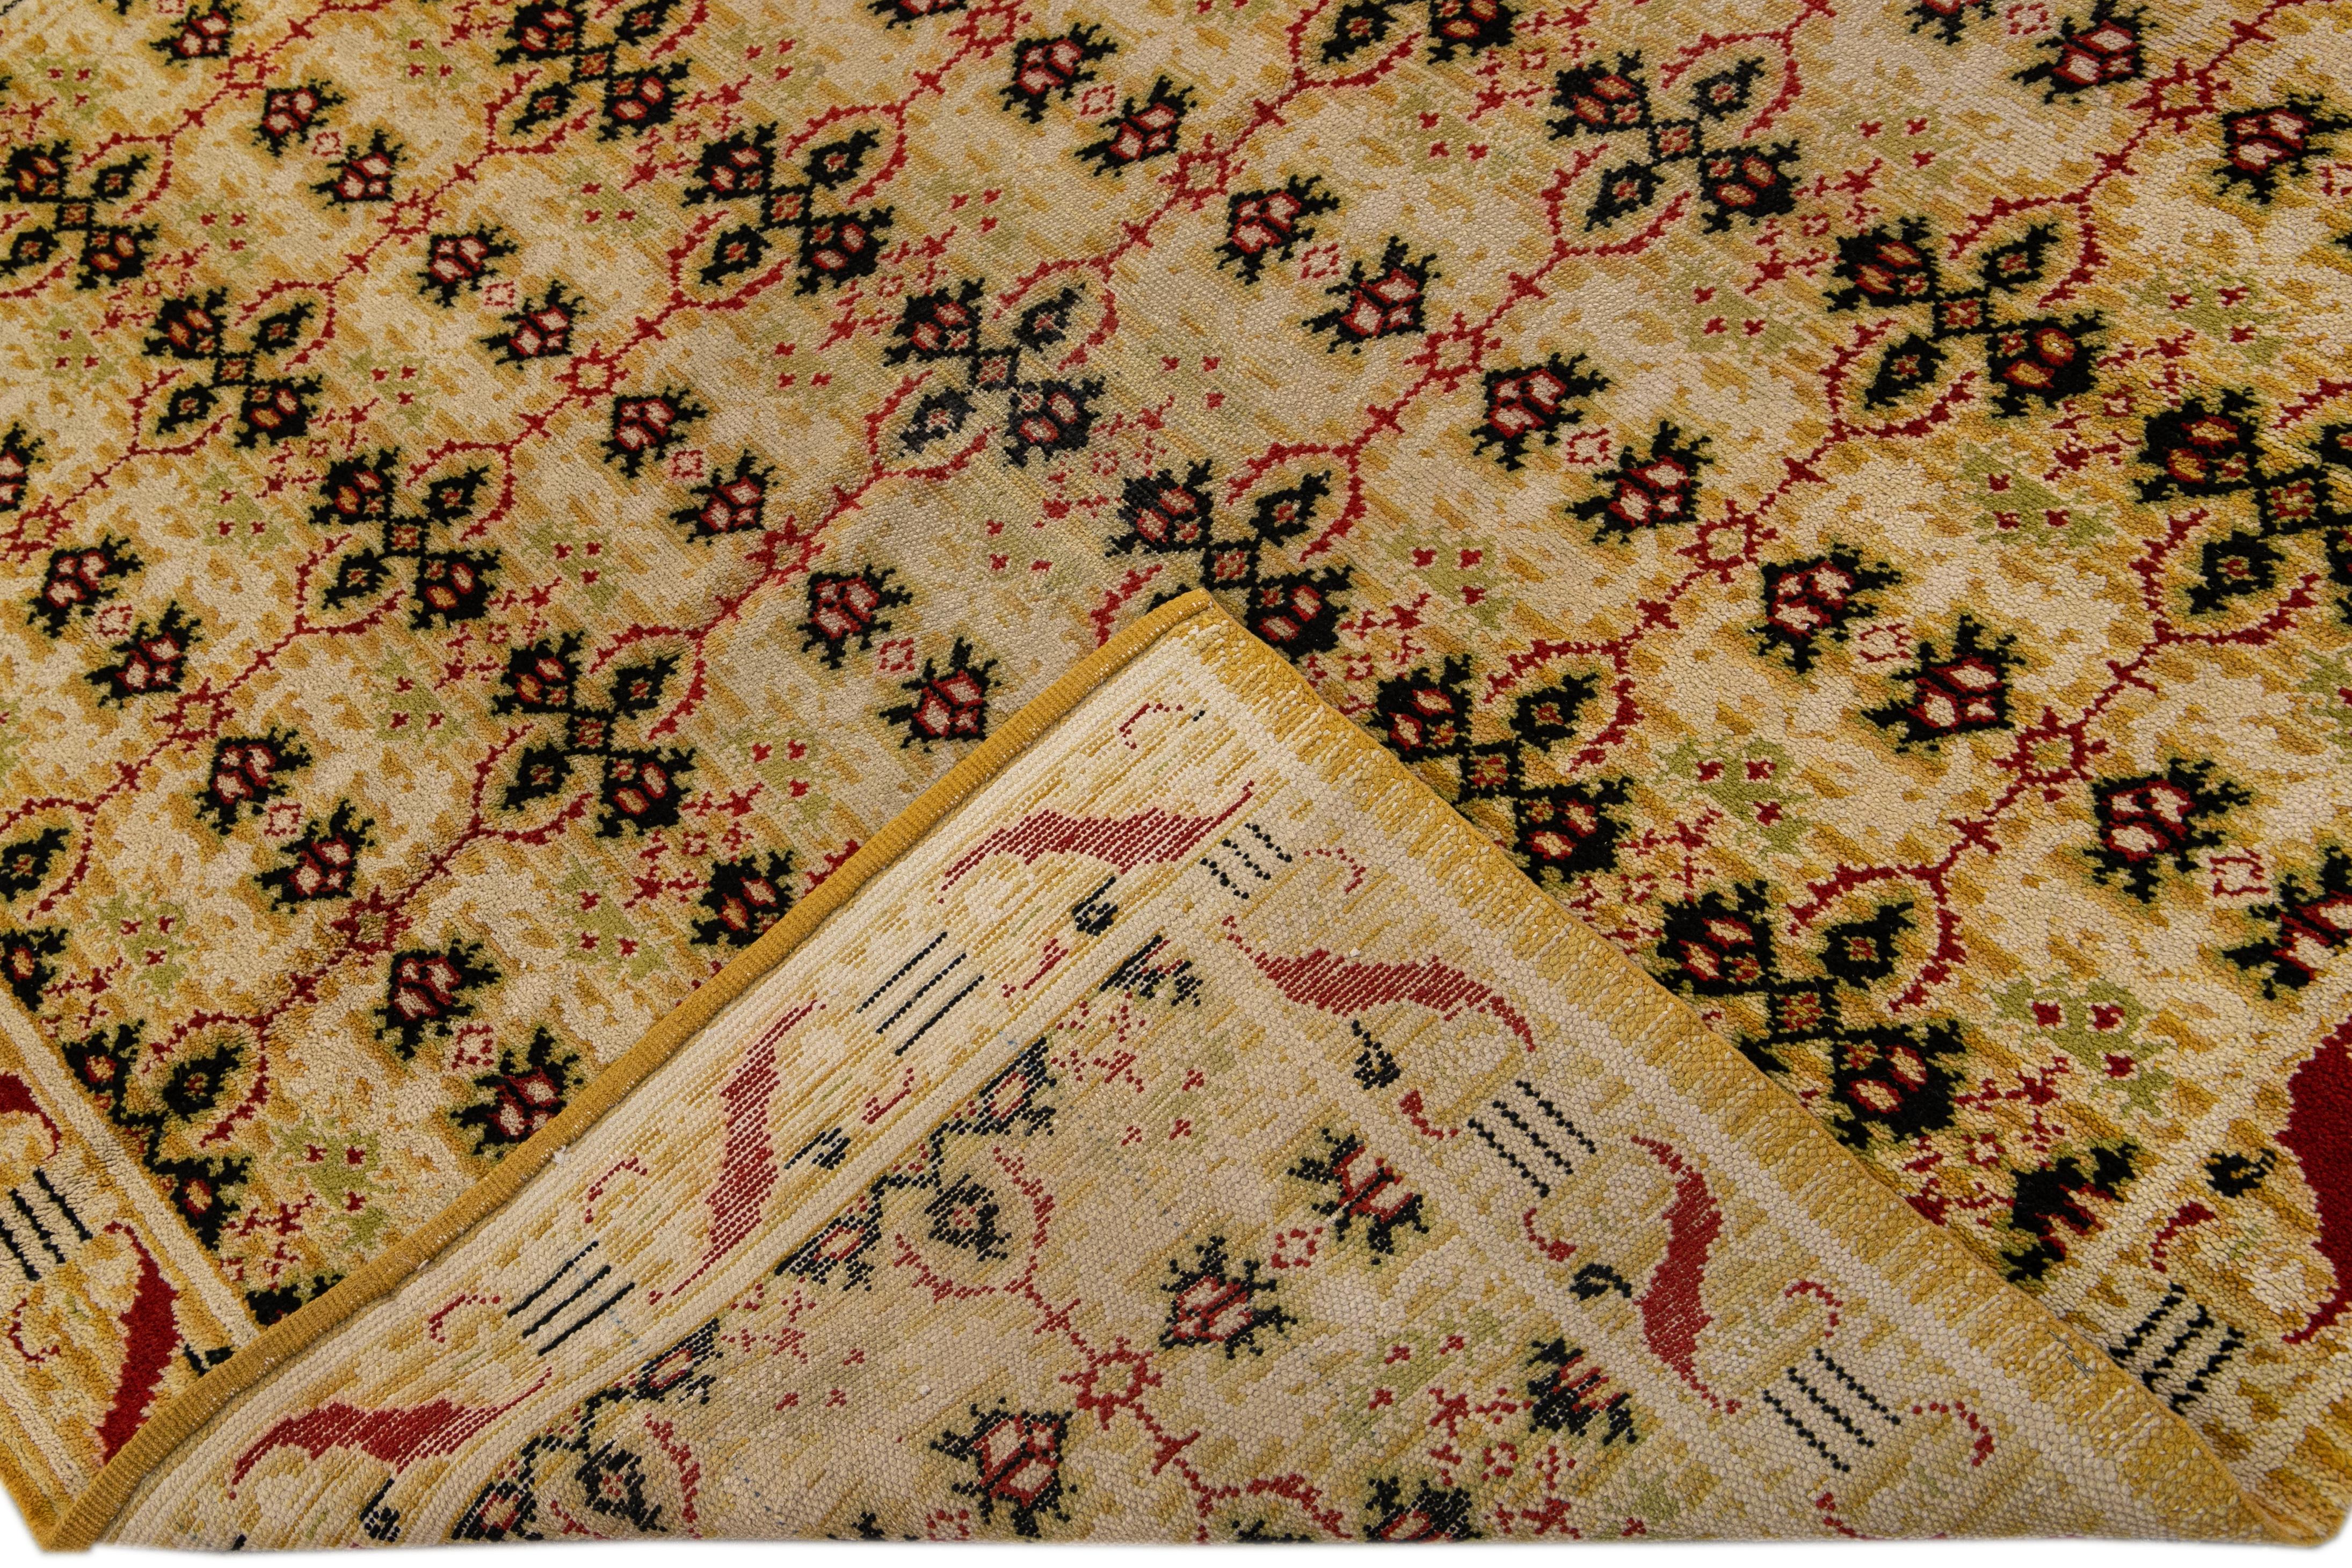 Schöner spanischer handgeknüpfter Wollteppich im Vintage-Stil mit beigem und goldrotem Feld. Dieser spanische Teppich hat grüne und rote Akzente in einem geometrischen Allover-Muster. 

Dieser Teppich misst 6'5